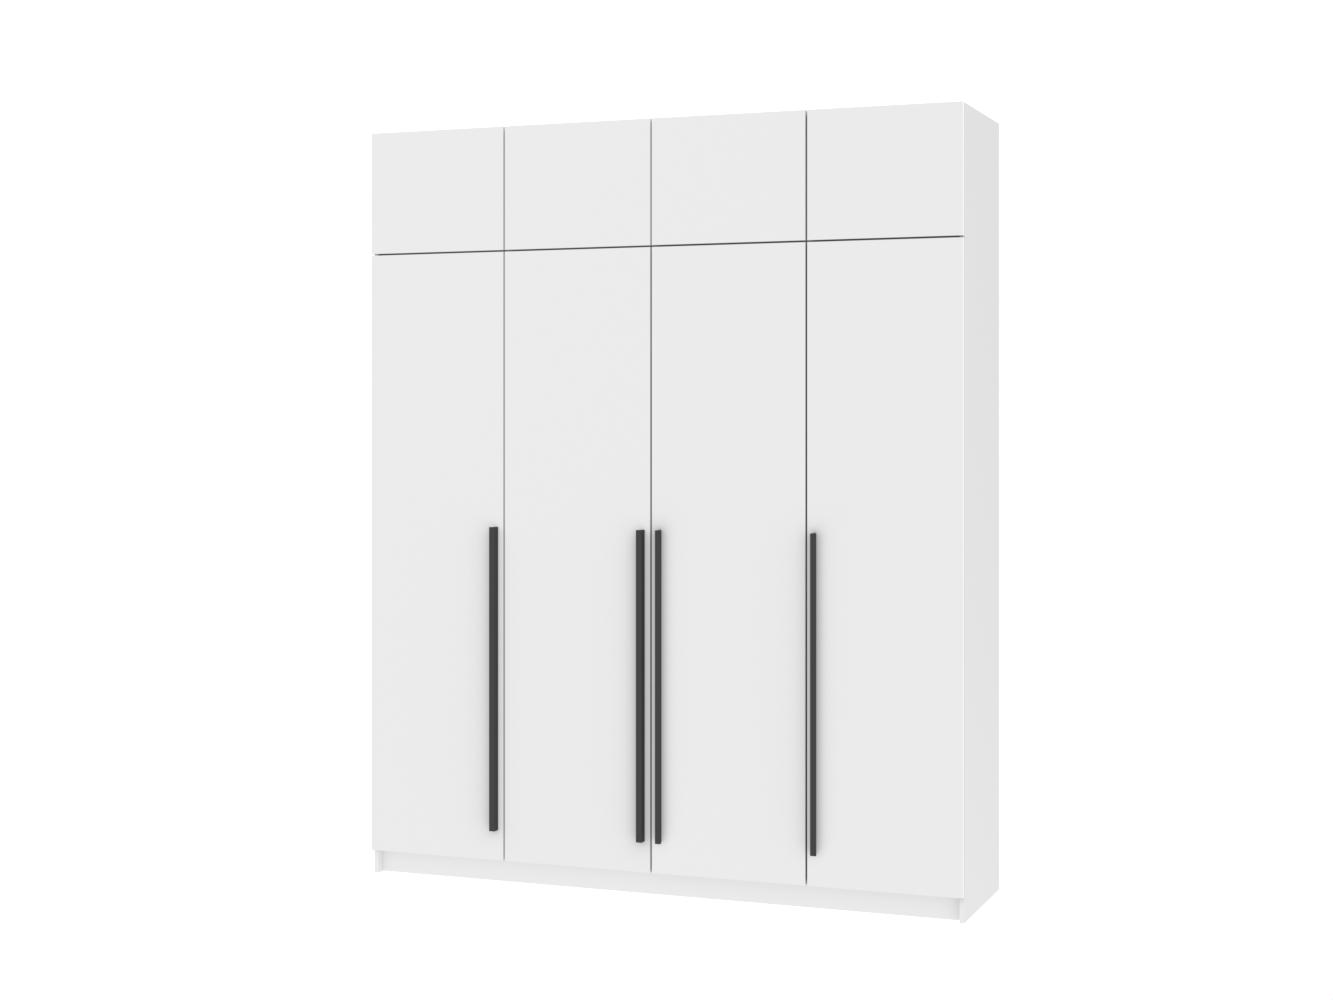  Распашной шкаф Пакс Форсанд 31 white ИКЕА (IKEA) изображение товара